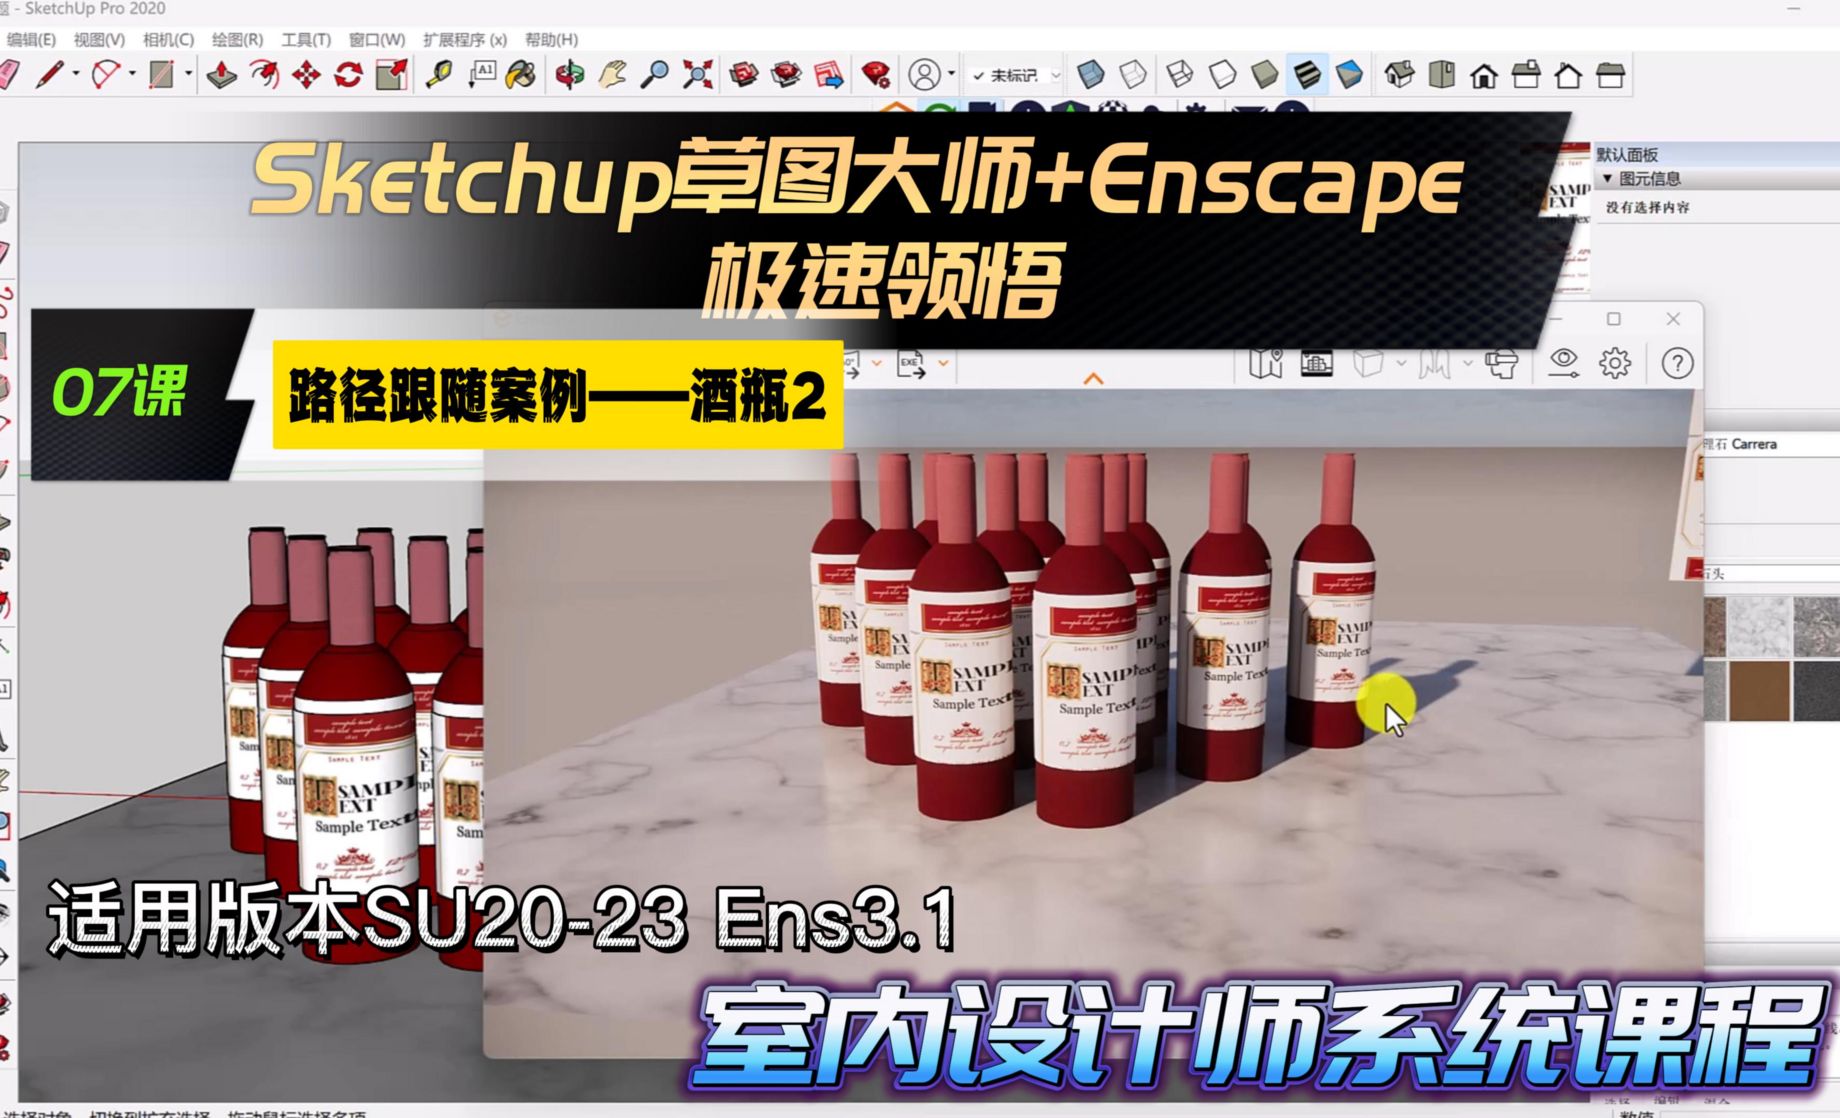 Sketchup+Enscape室内设计极速领悟-路径跟随案例《酒瓶》2